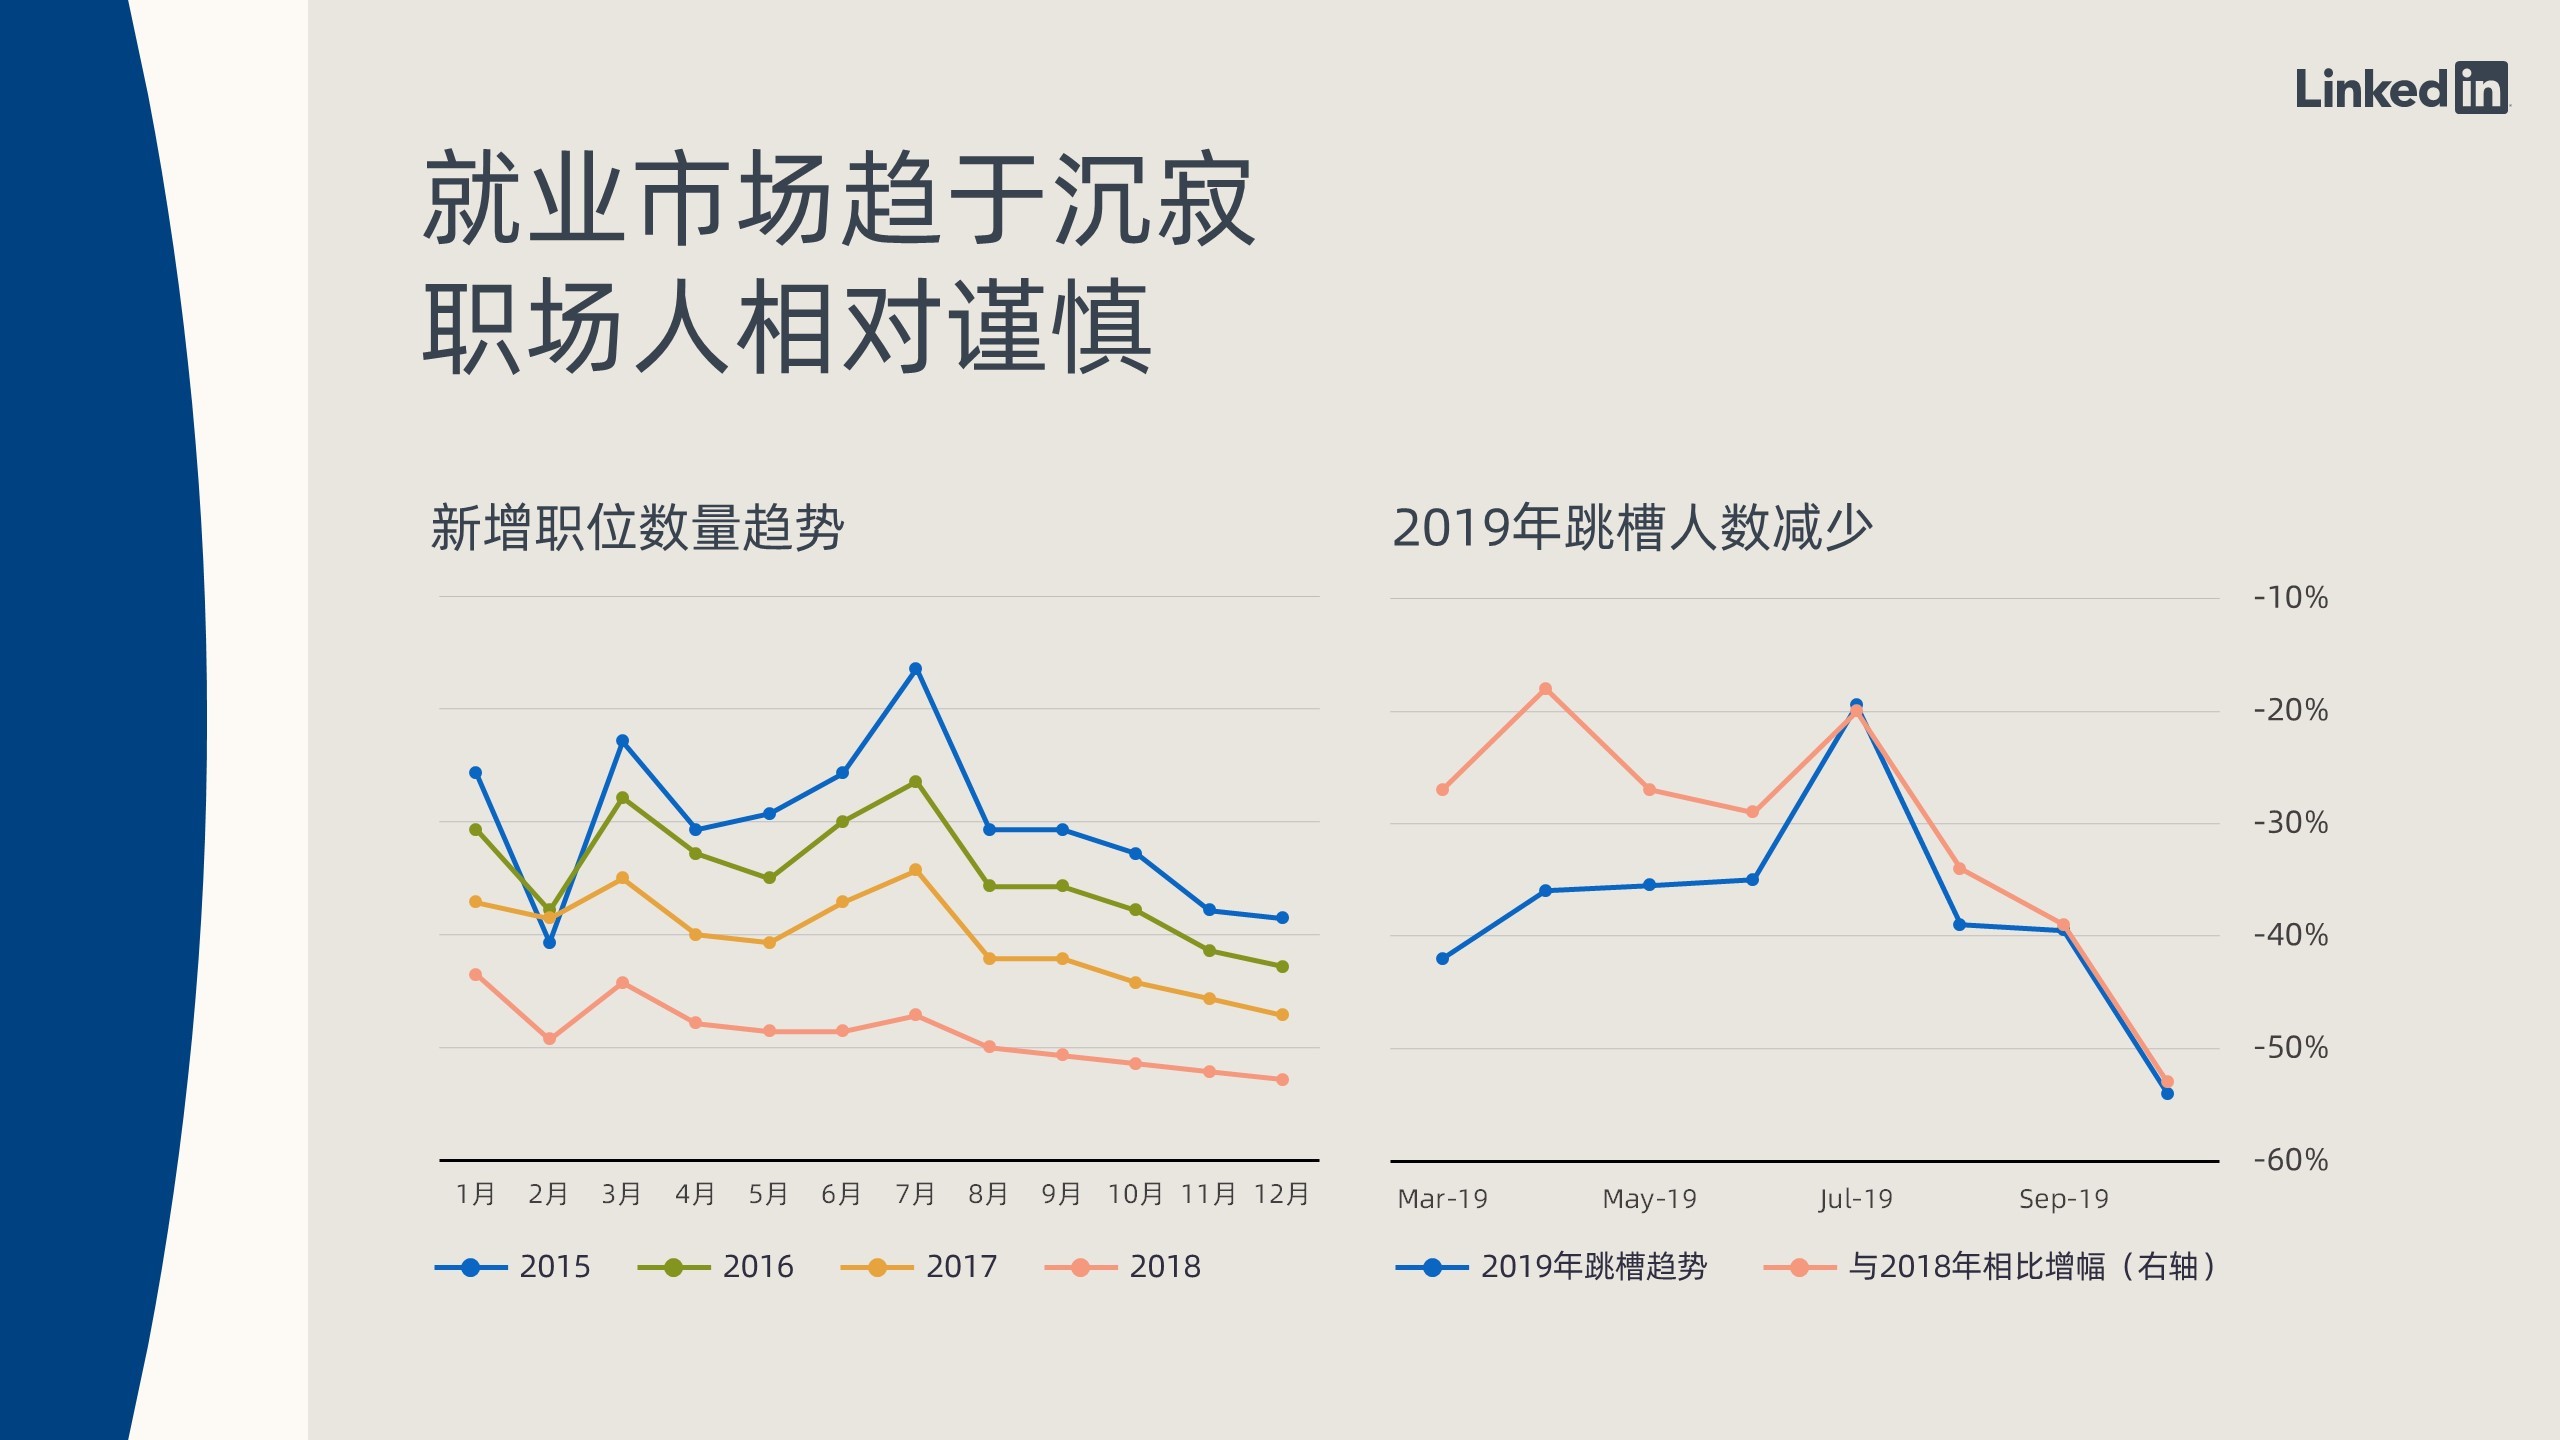 领英2019中国职场趋势盘点： 就业市场活力相对减弱，职场人更加积极求变